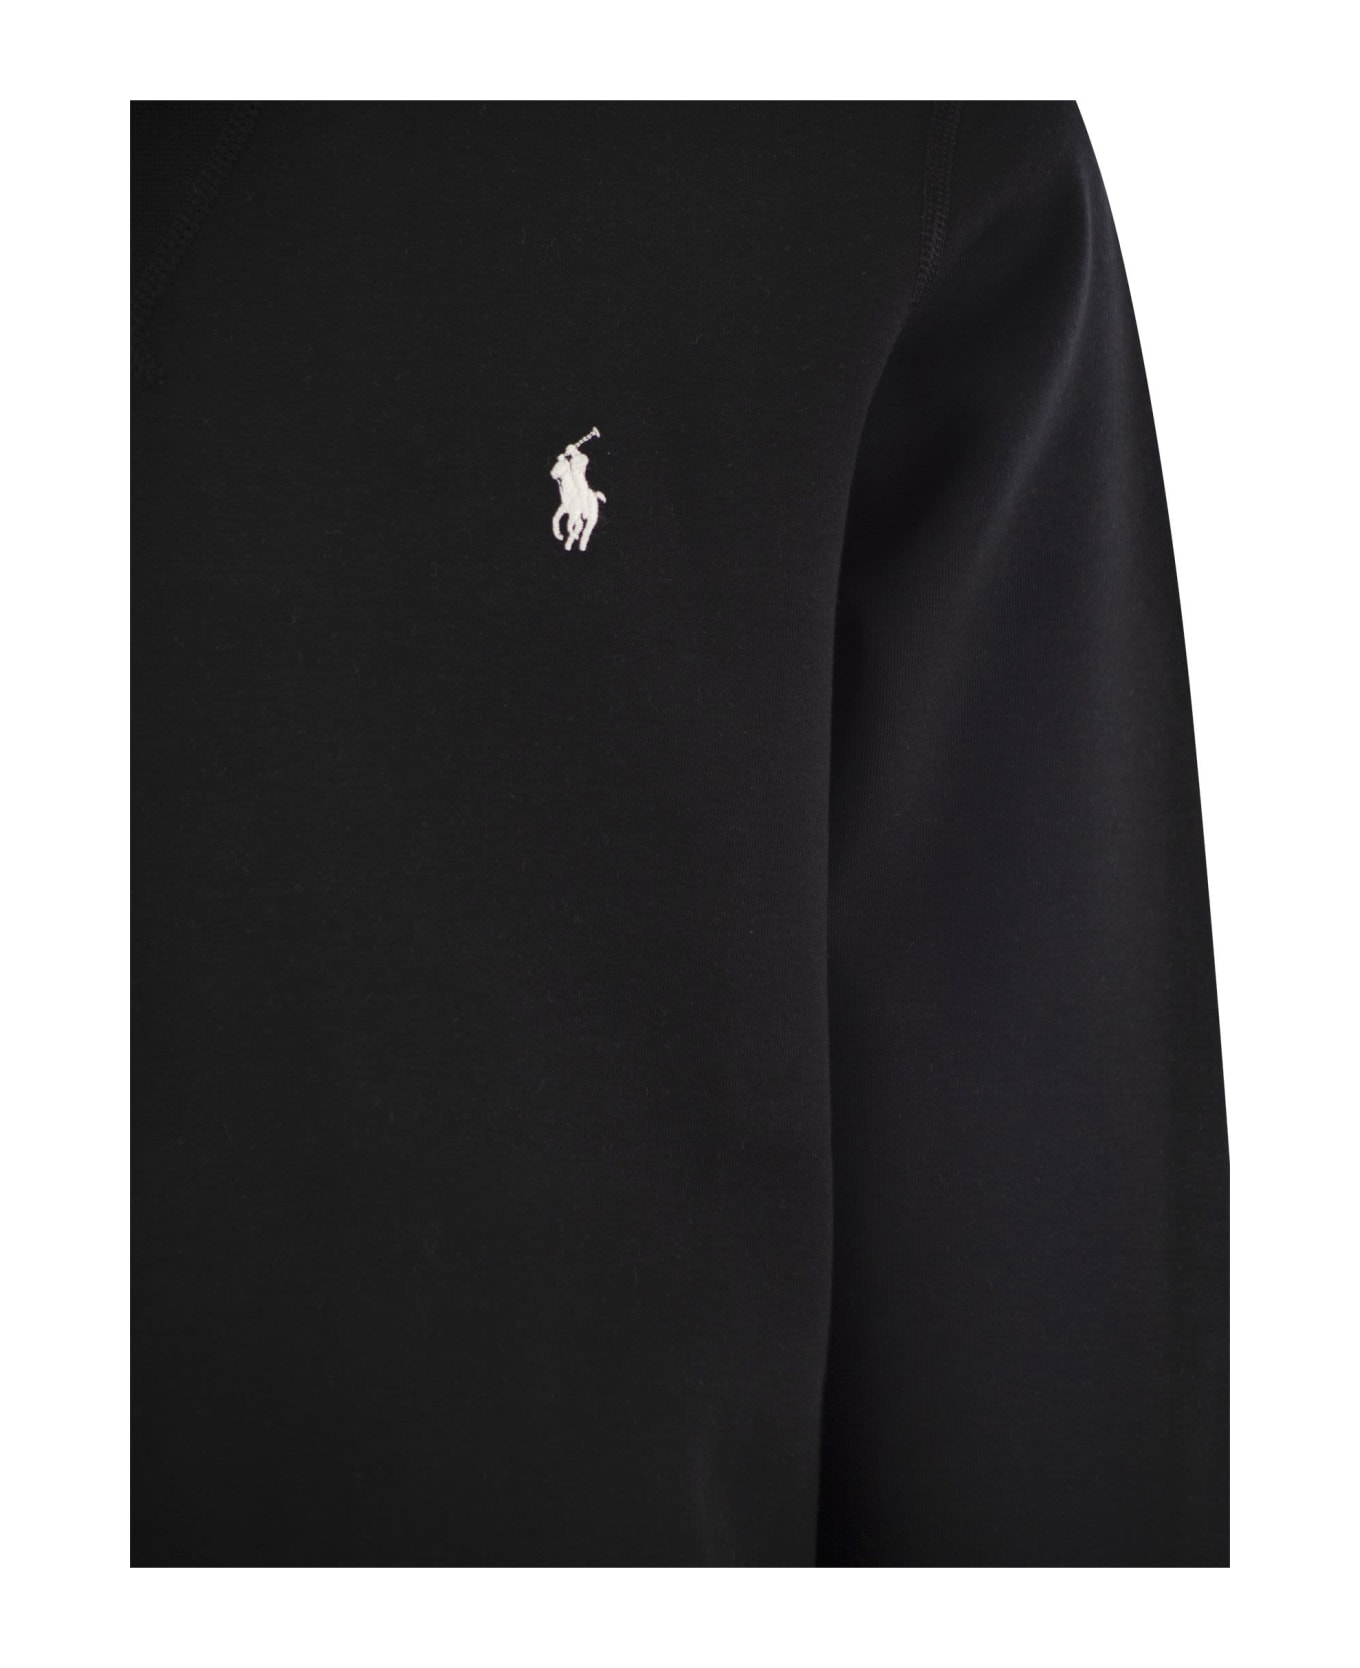 Polo Ralph Lauren Double Knit Crew Neck Sweatshirt - Black フリース